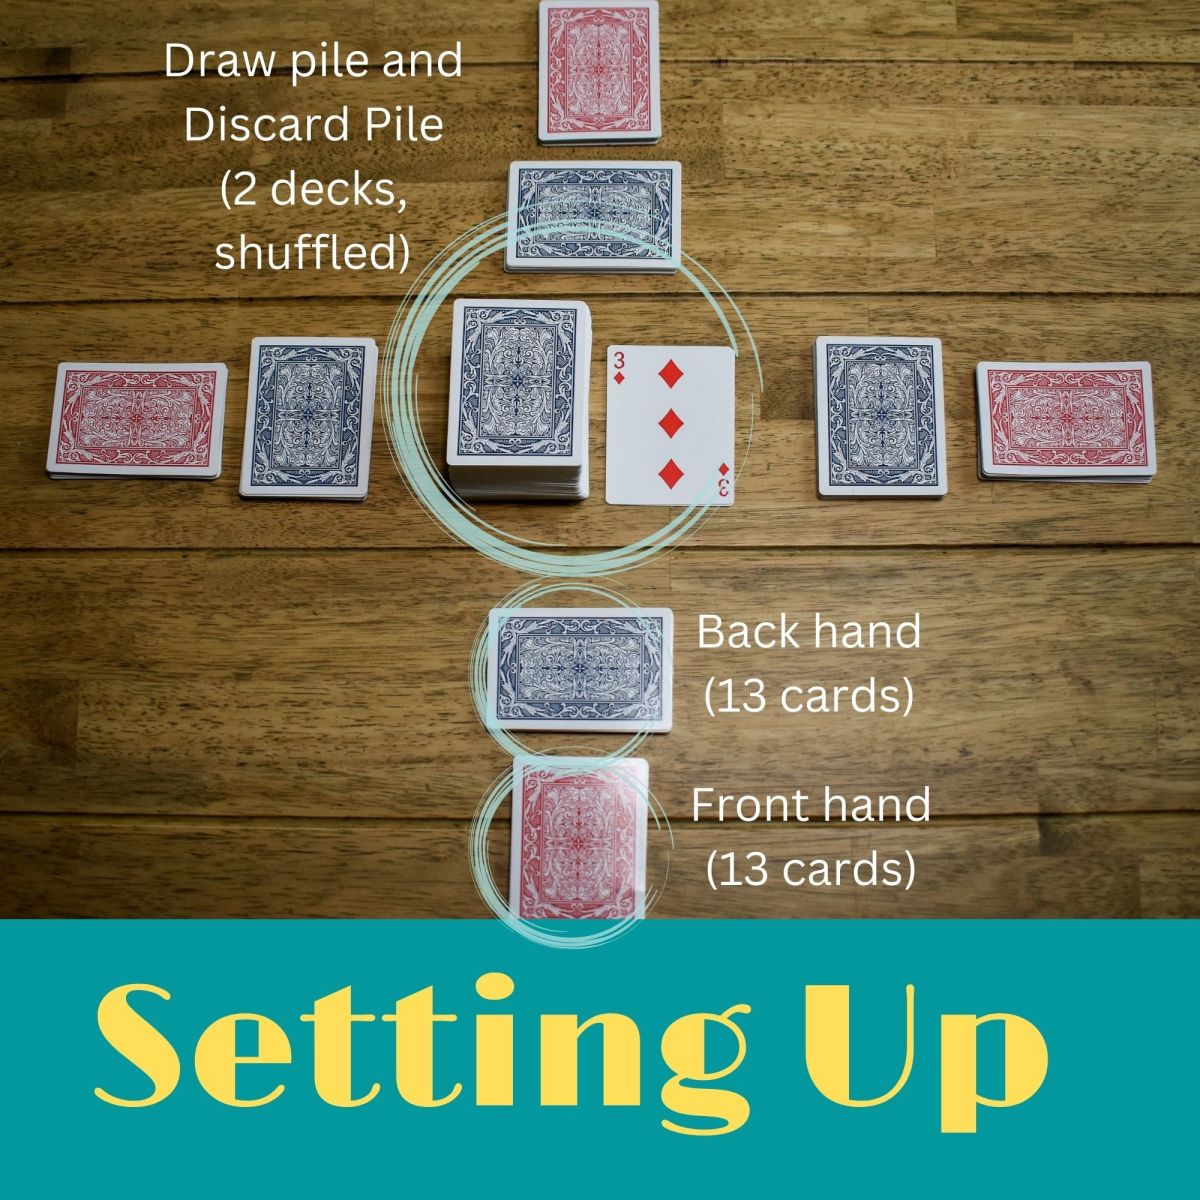 How to Play the SKIP-BO Card Game - HobbyLark